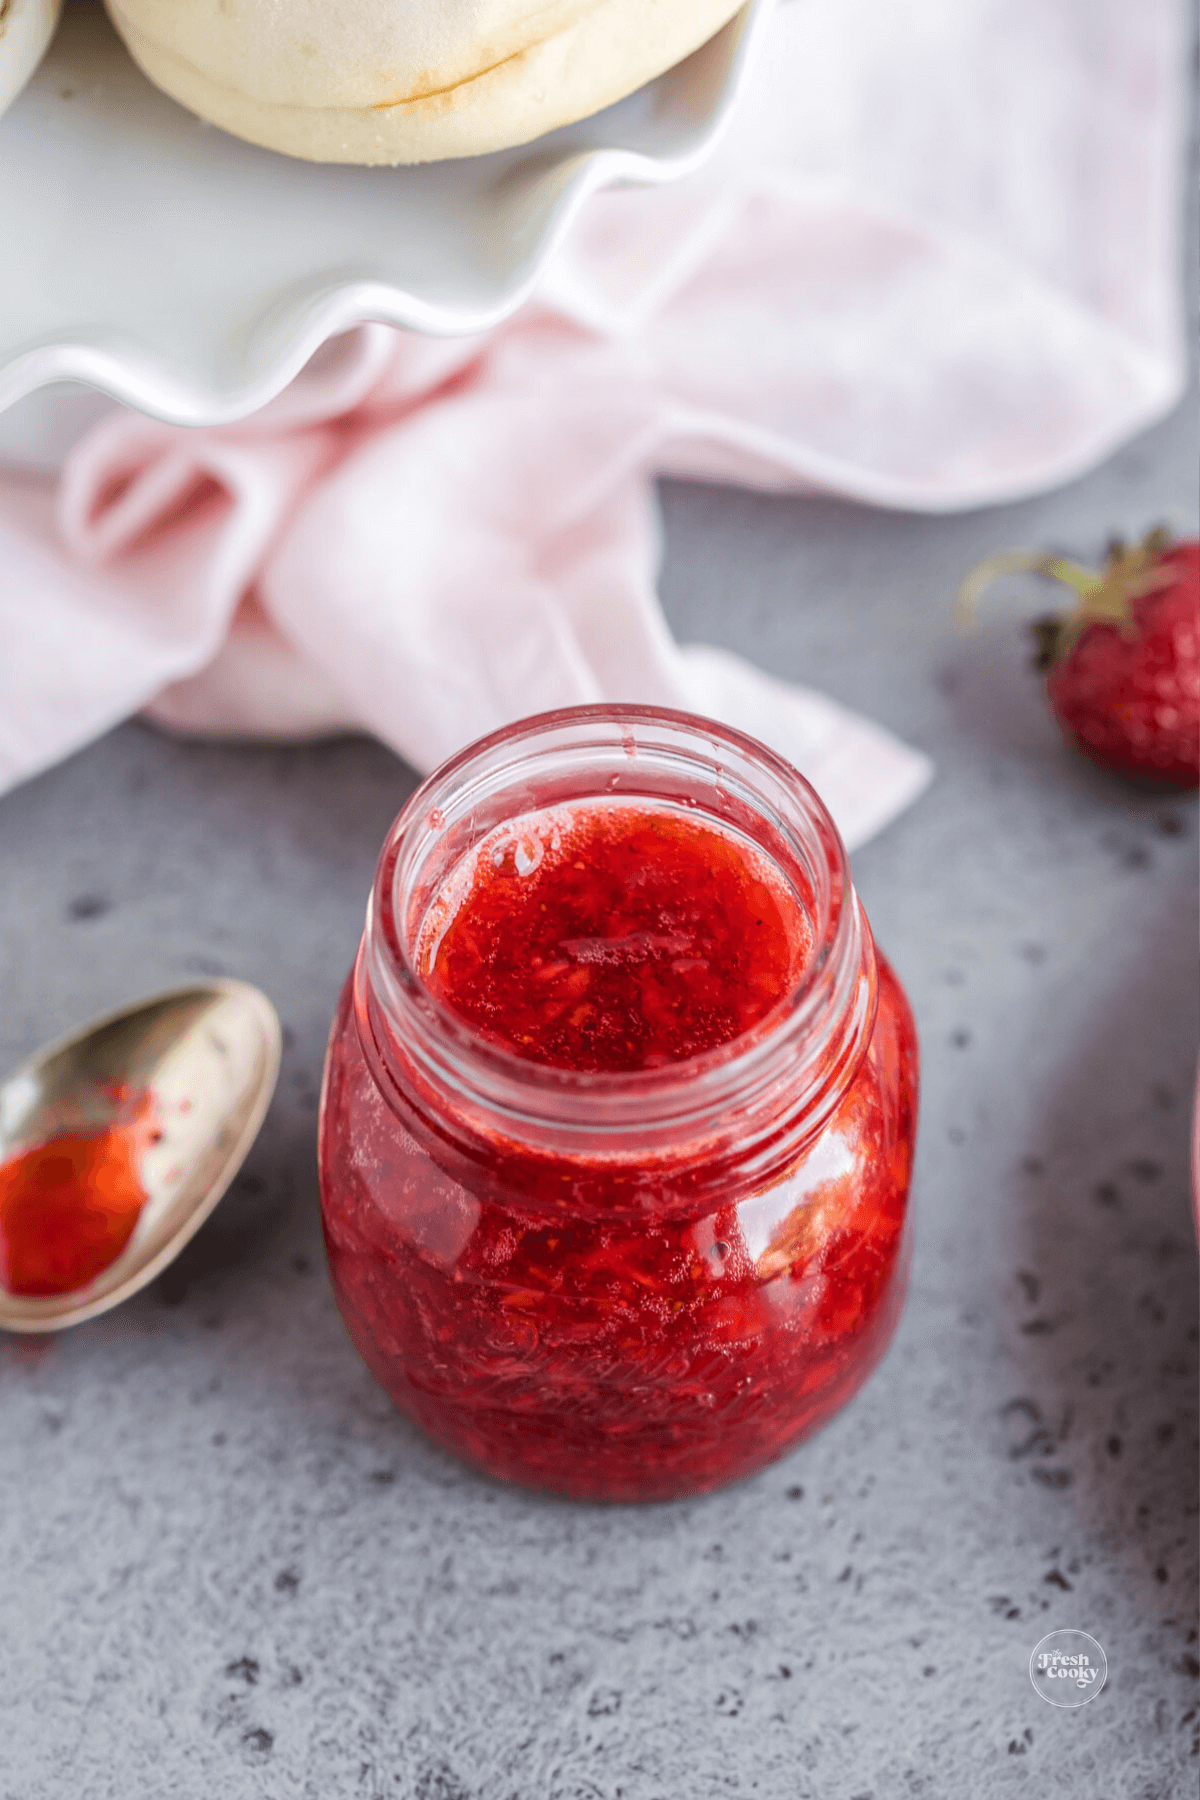 Strawberry freezer jam recipe in pretty jar.